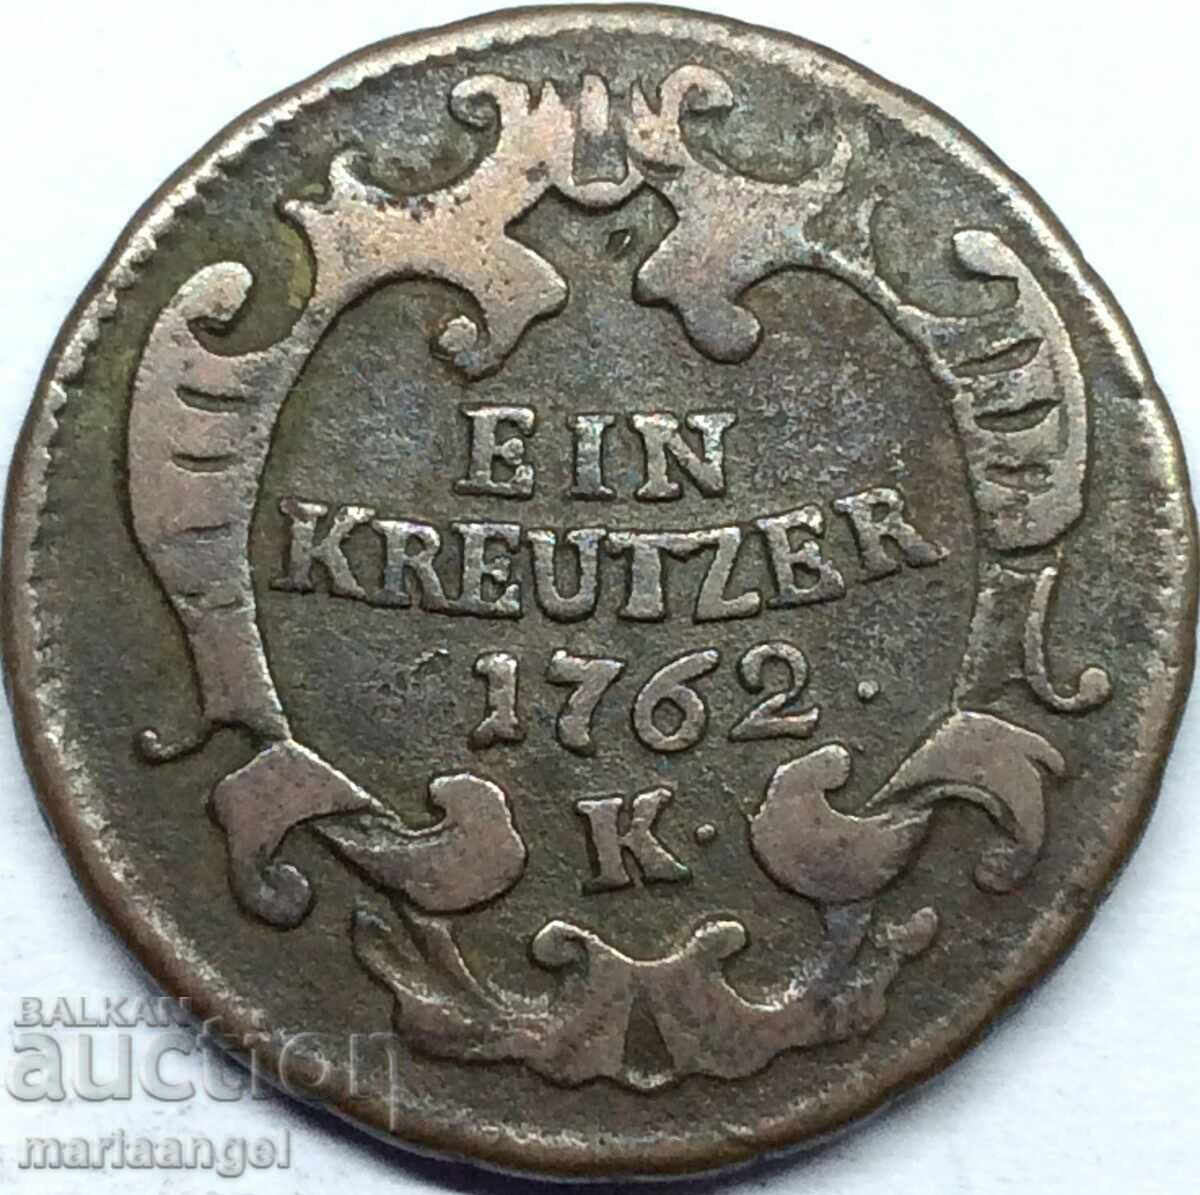 Австрия 1 кройцер 1762 К Мария Терезия 11,12г  26мм